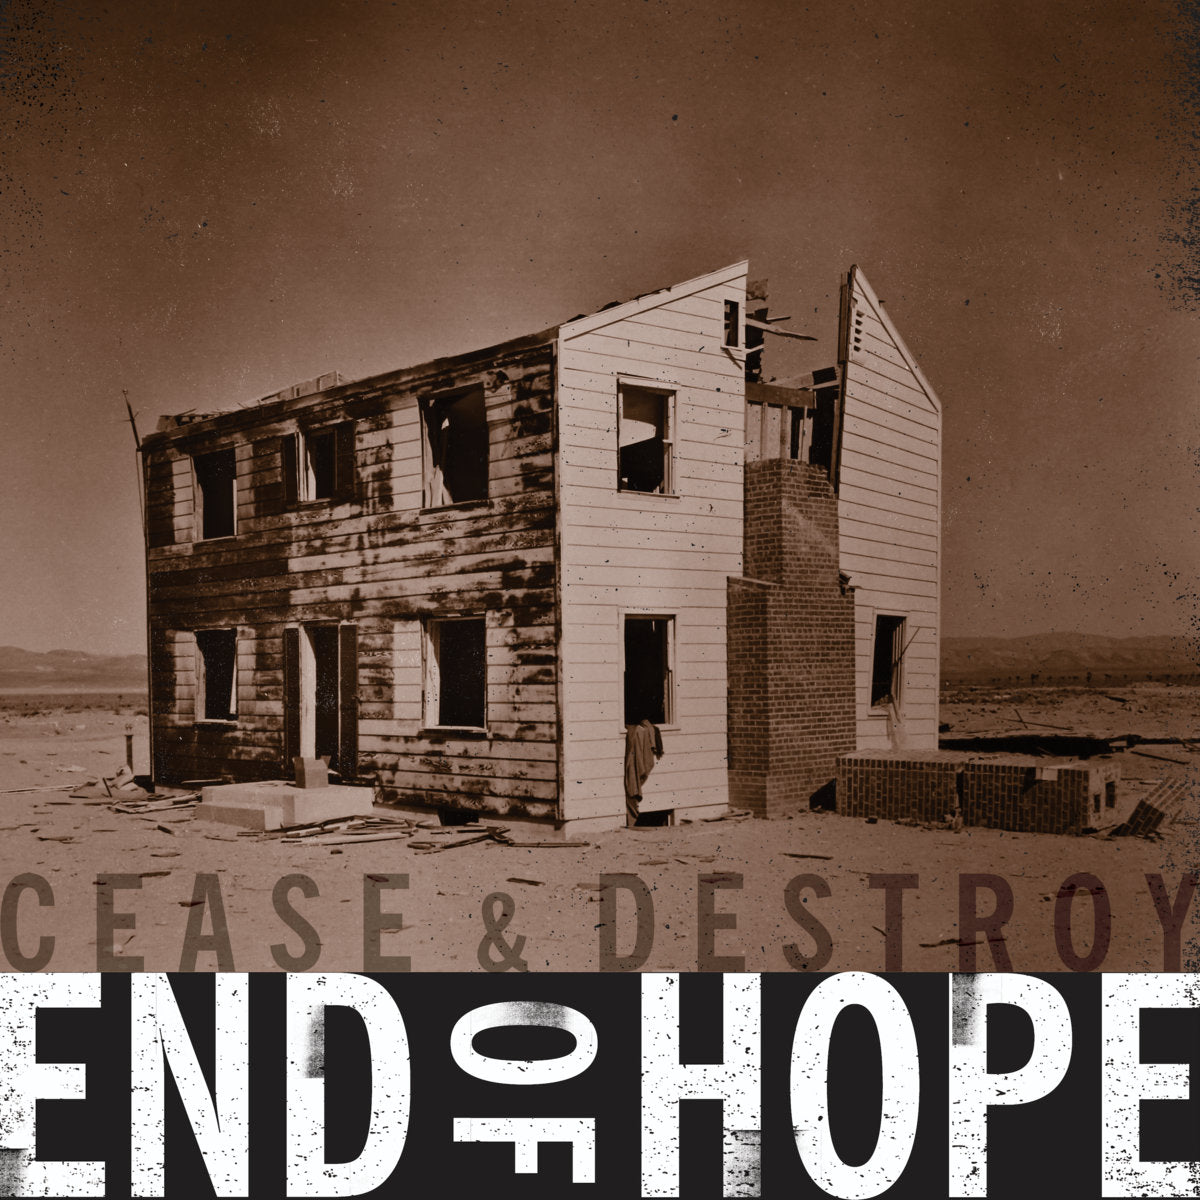 END OF HOPE – Cease & Destroy